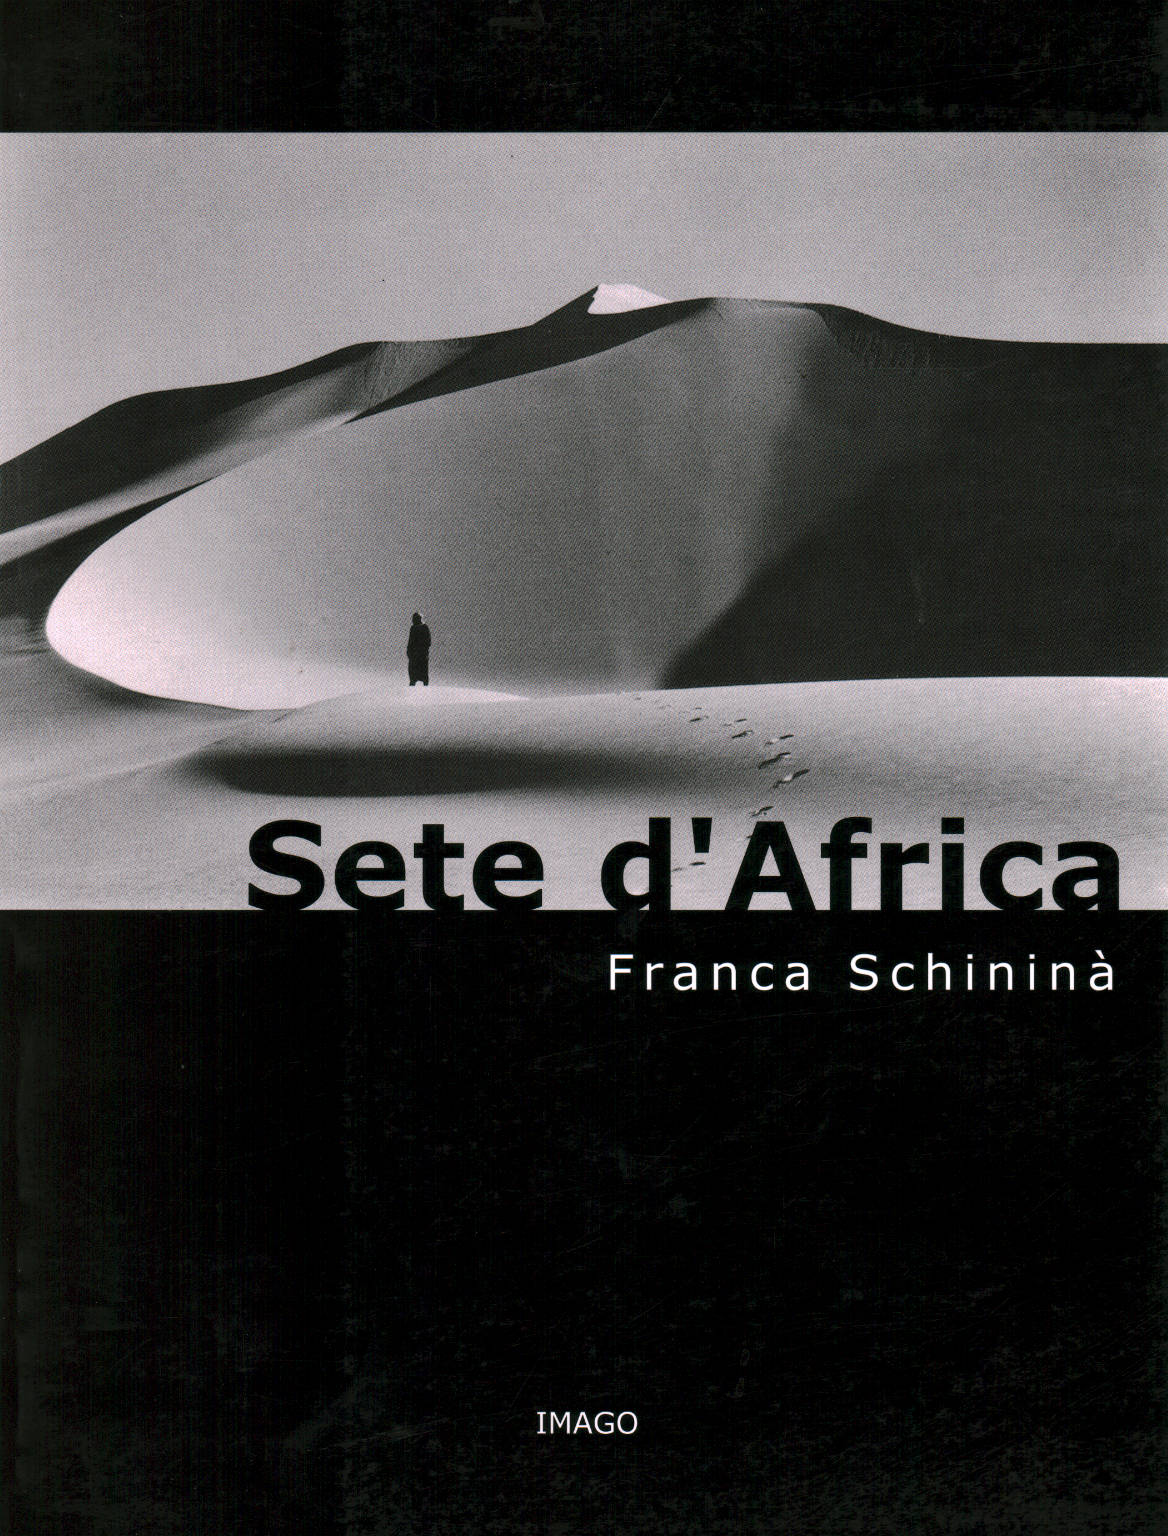 Sete d Africa, Franca Schininà